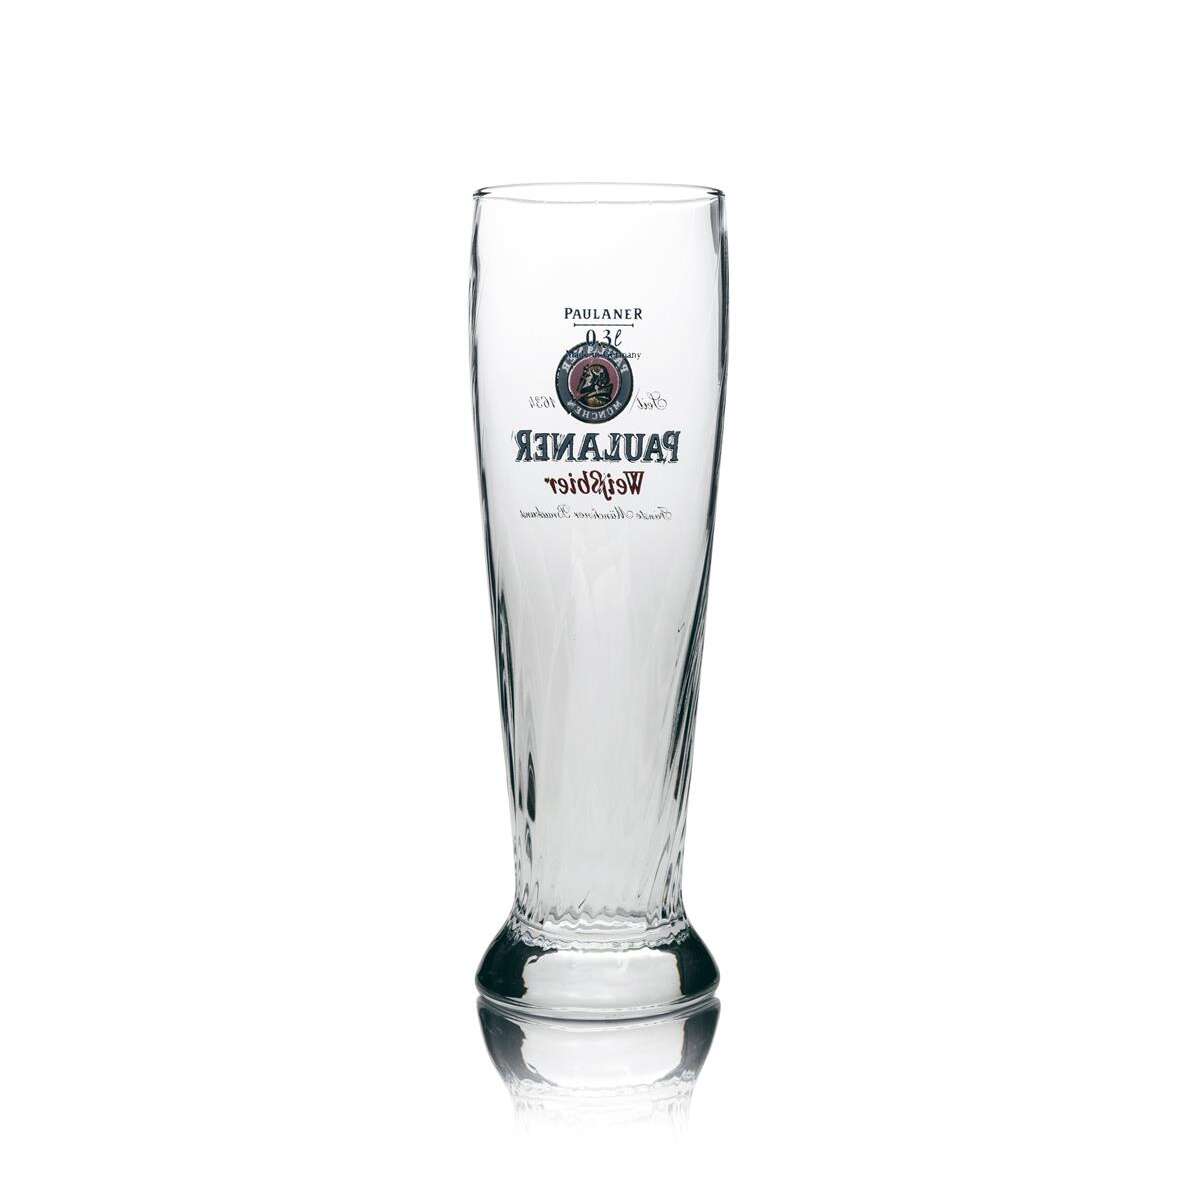 Paulaner Glas Bier online kaufen - Barmeister24.de